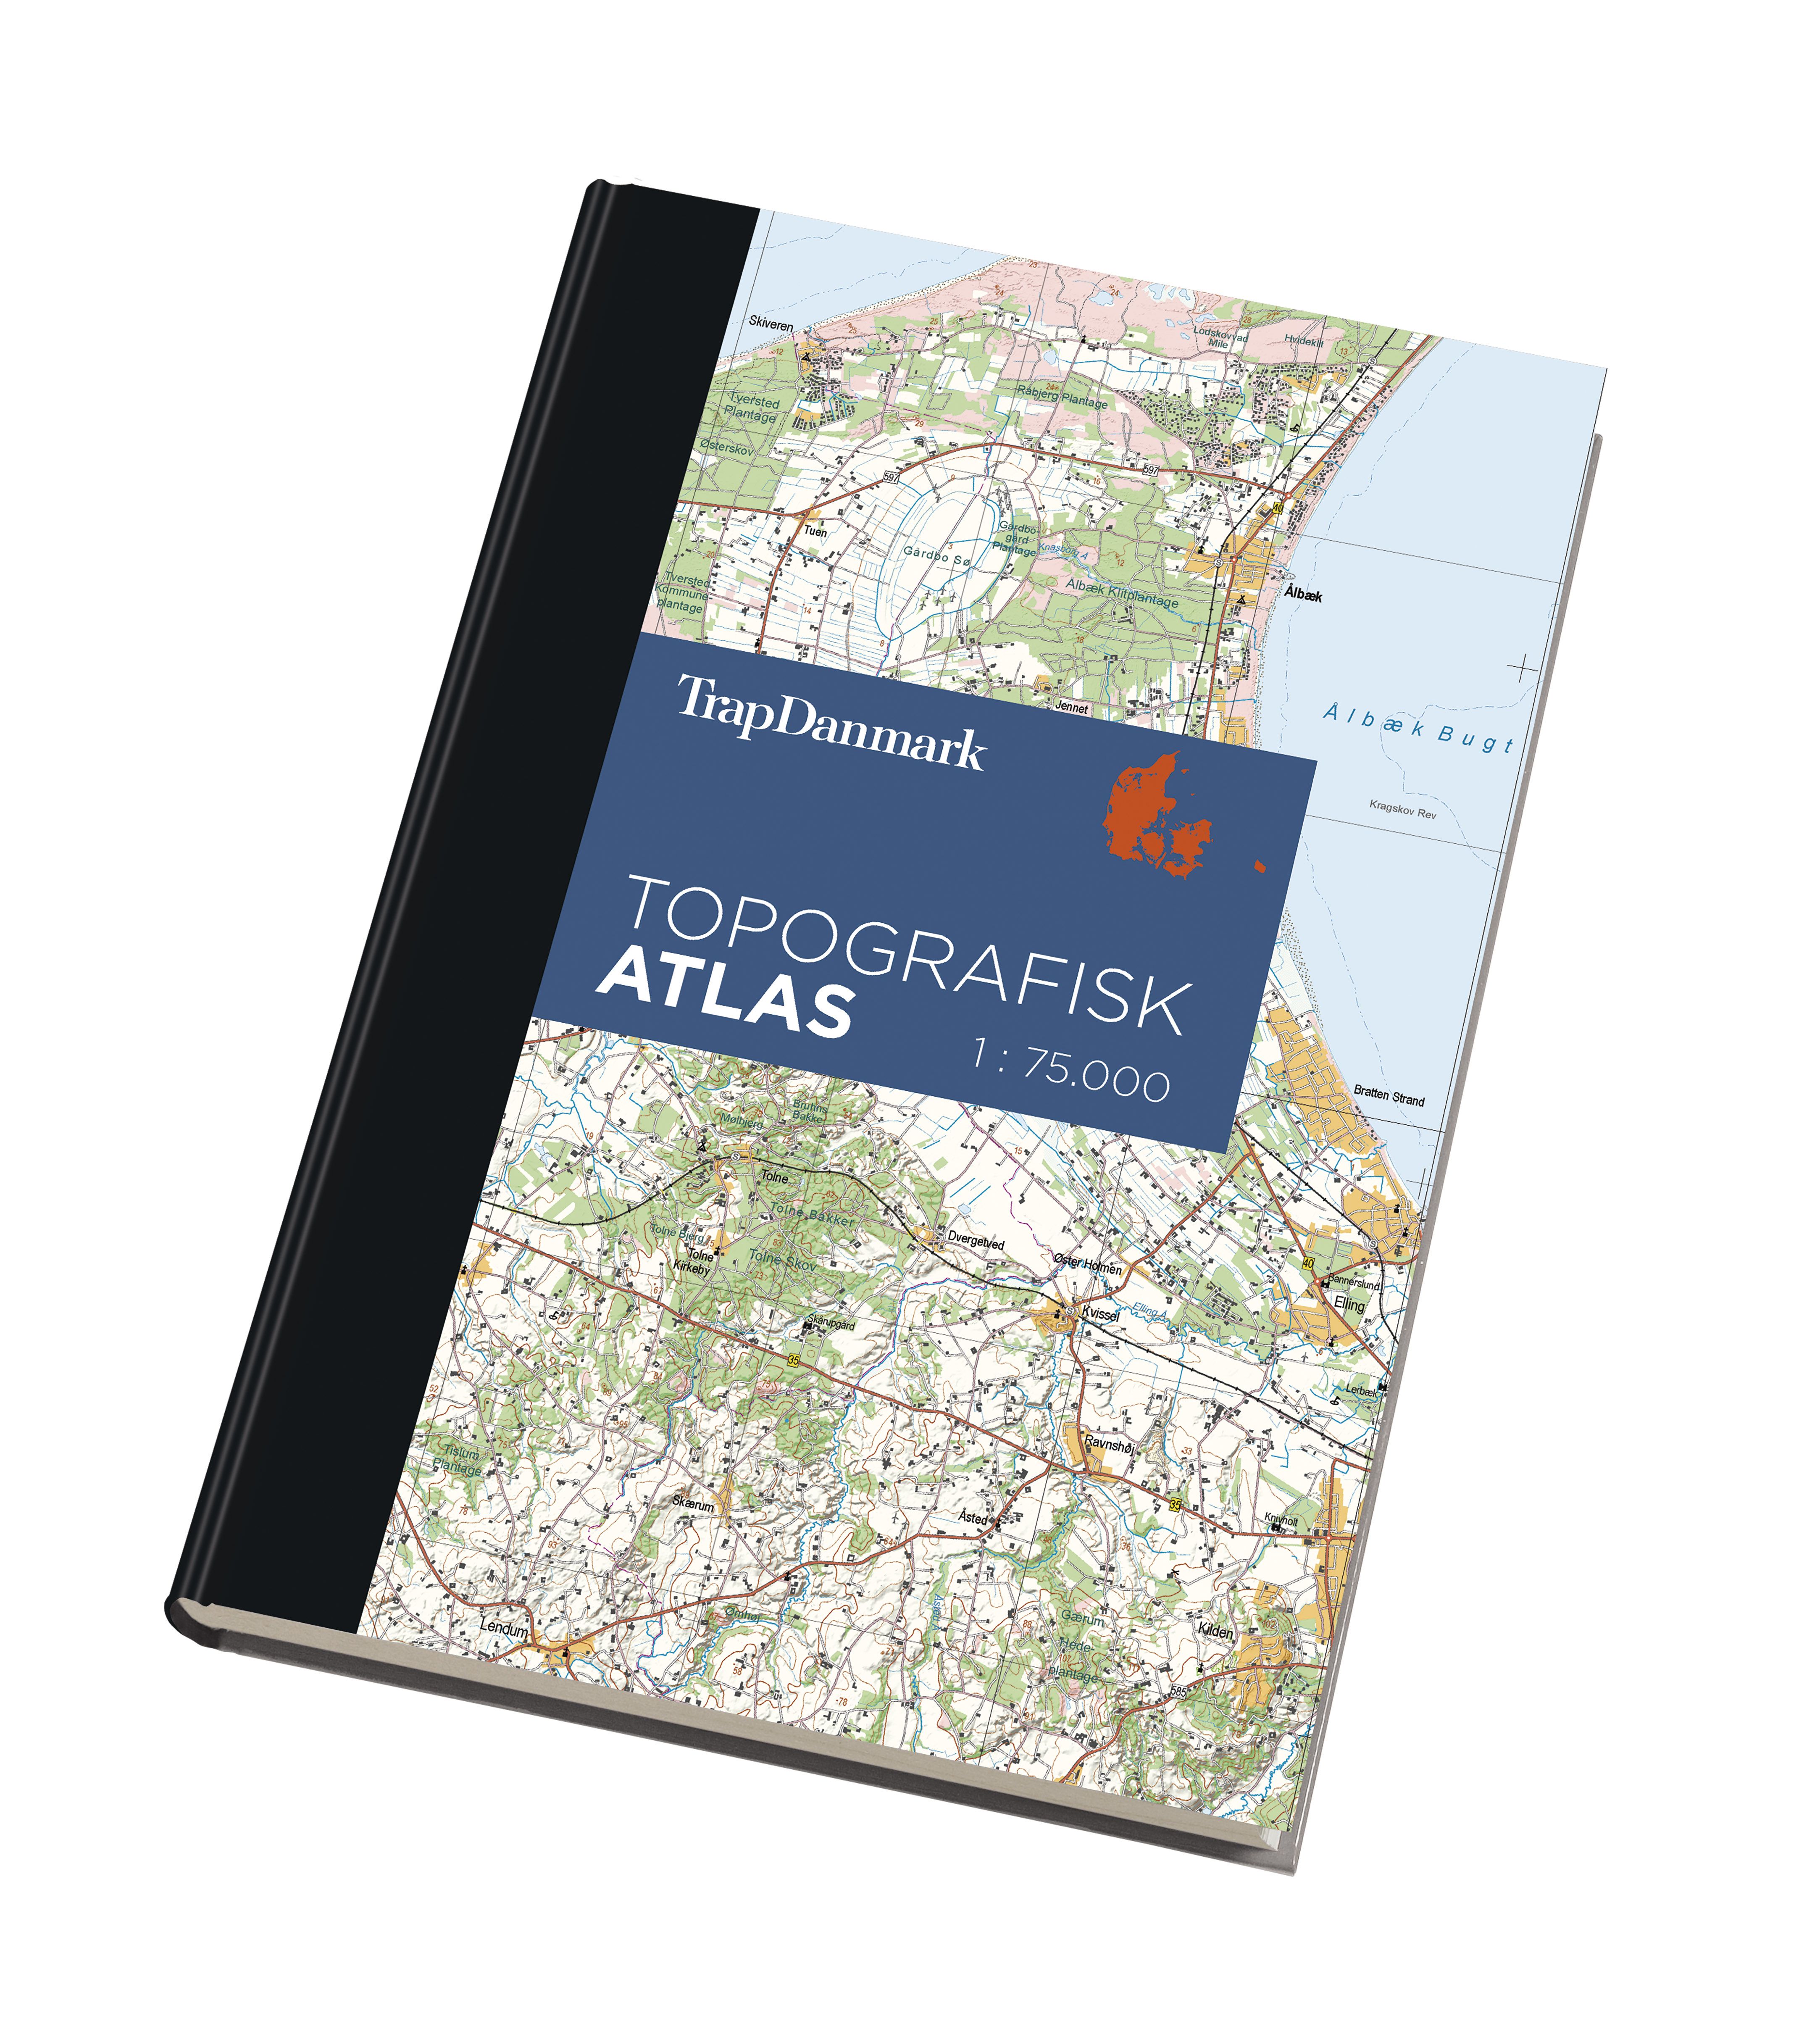 Denmark’s first 3D atlas released